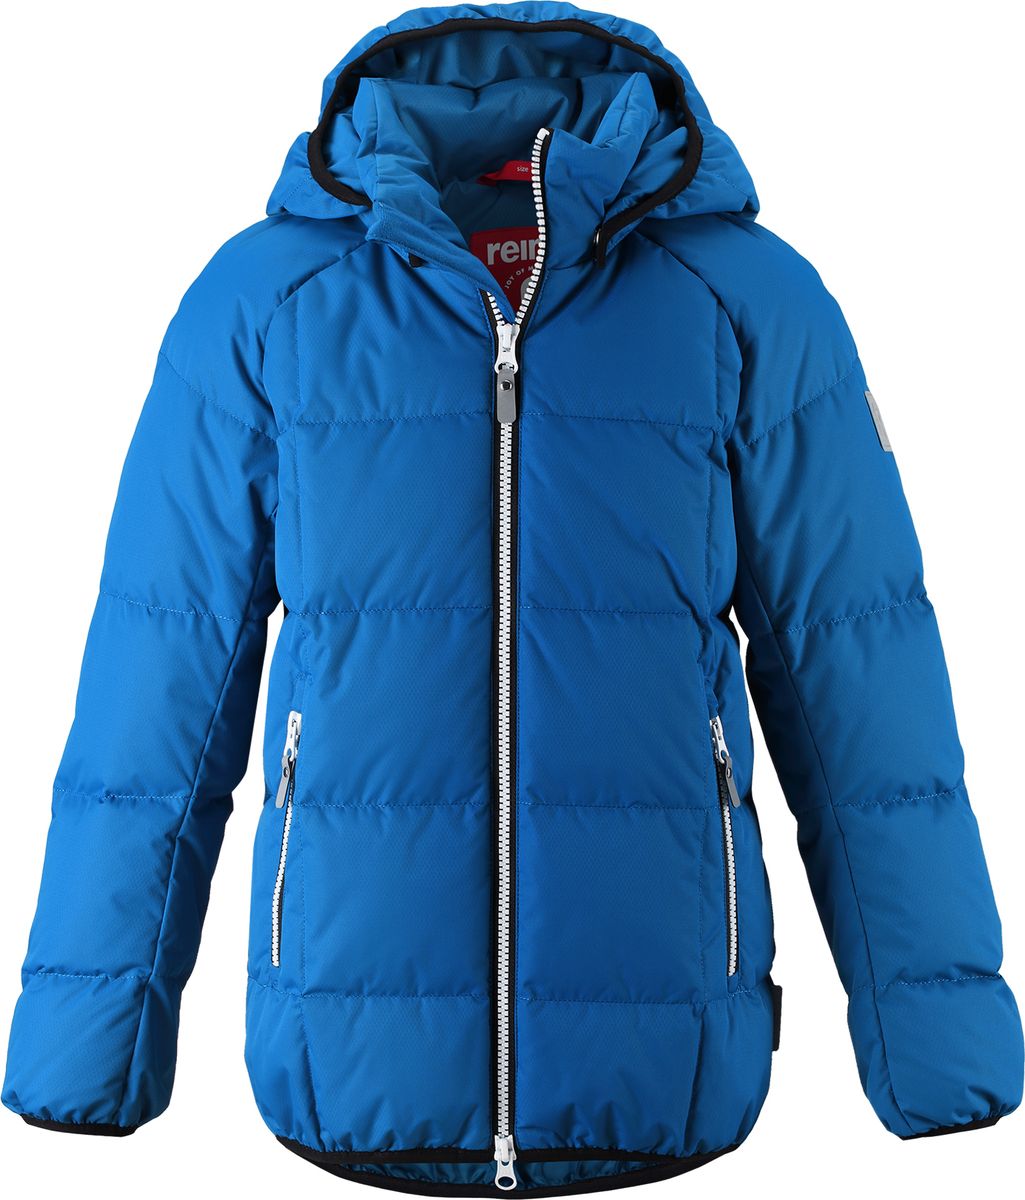 Куртка для мальчика Reima Jord, цвет: синий. 5313596680. Размер 134